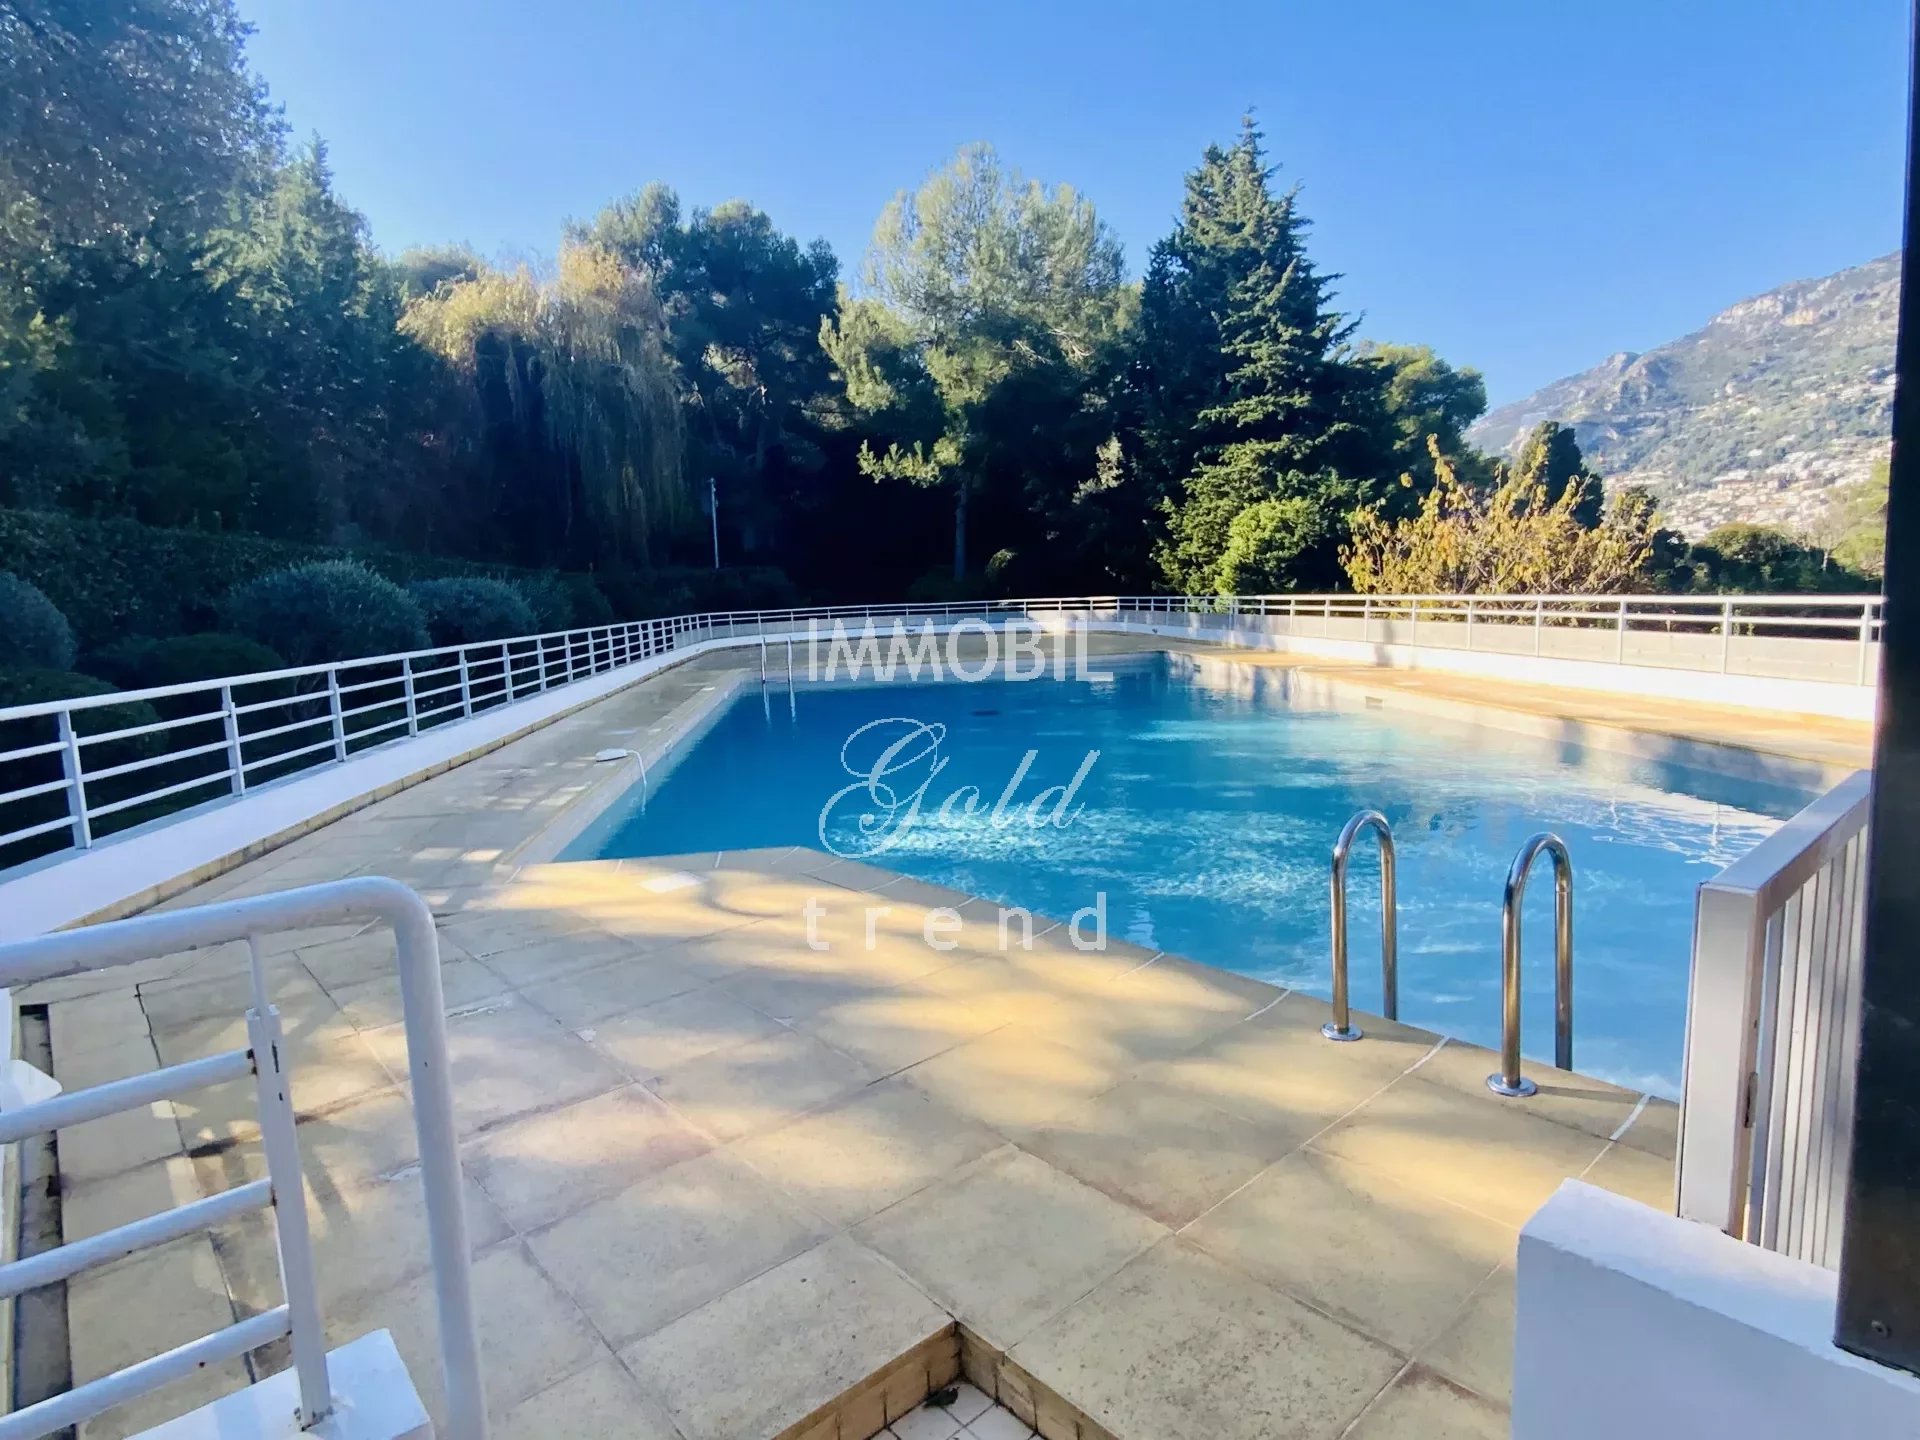 Immobilier Roquebrune Cap Martin - A vendre, appartement trois pièces avec jardin, parking et cave dans une résidence avec piscine